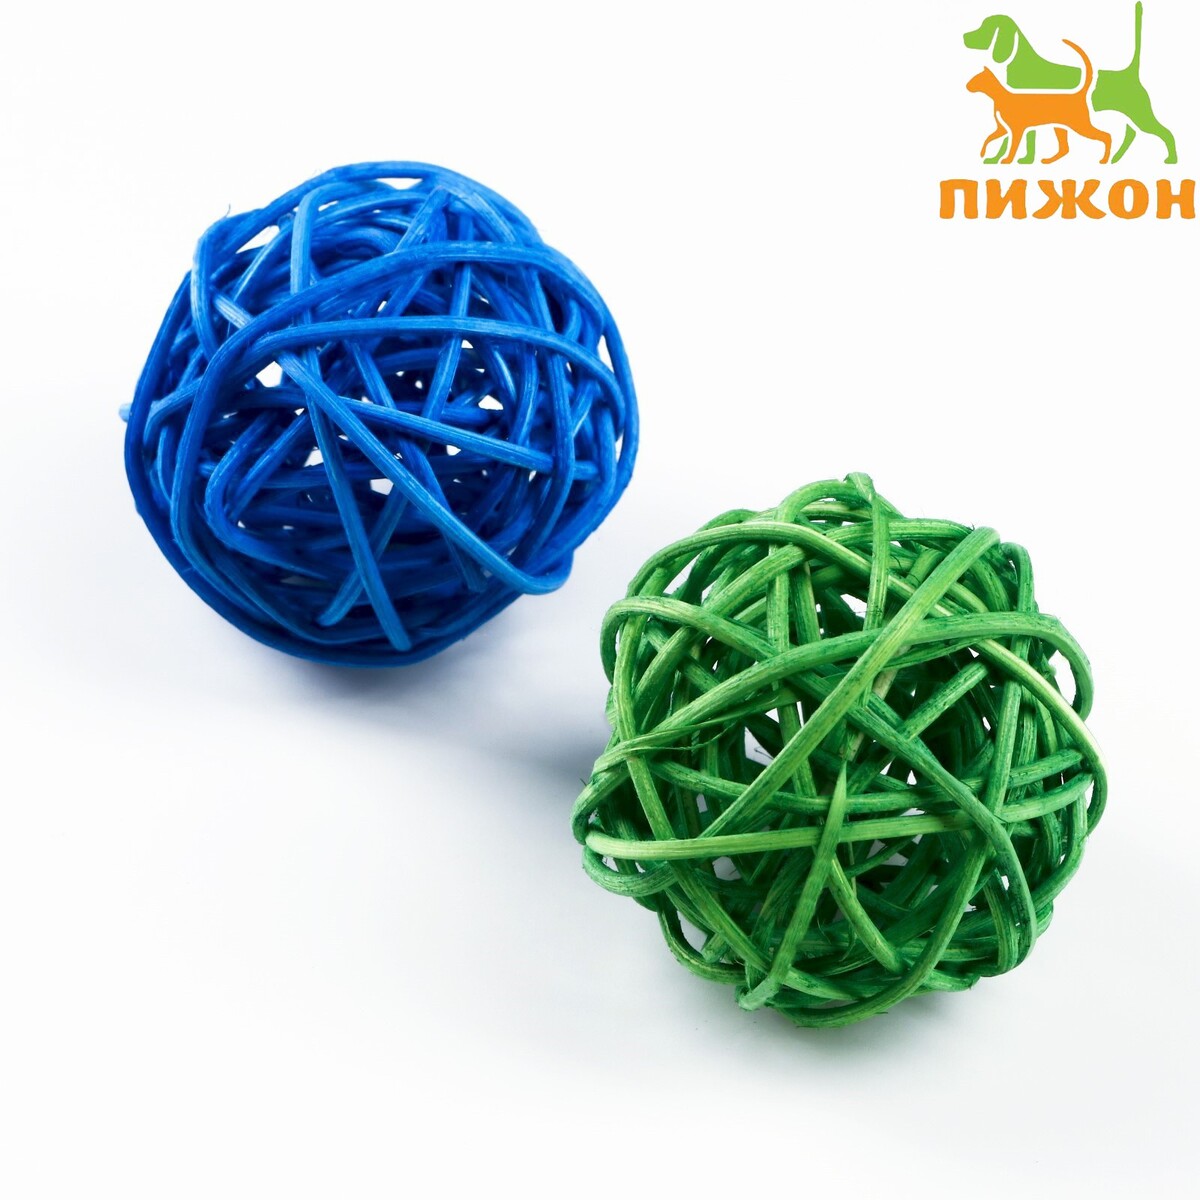 Набор из 2 плетеных шариков из лозы без бубенчиков, 5 см, синий/зеленый набор плетеных корзин для хранения ручной работы ladо́m